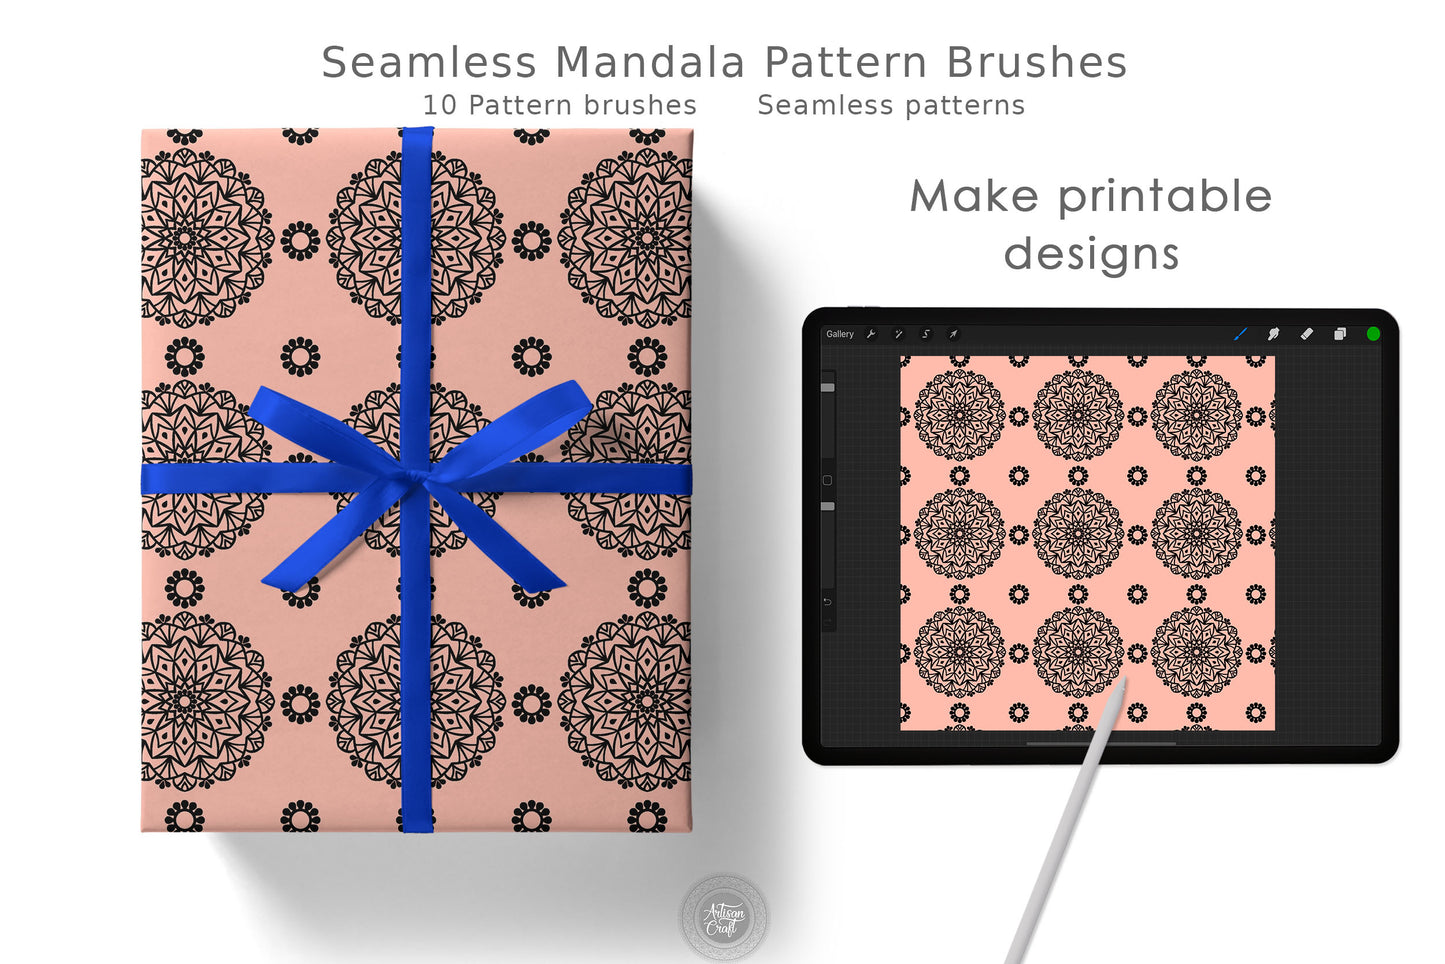 Seamless mandala pattern Procreate brush set of 10